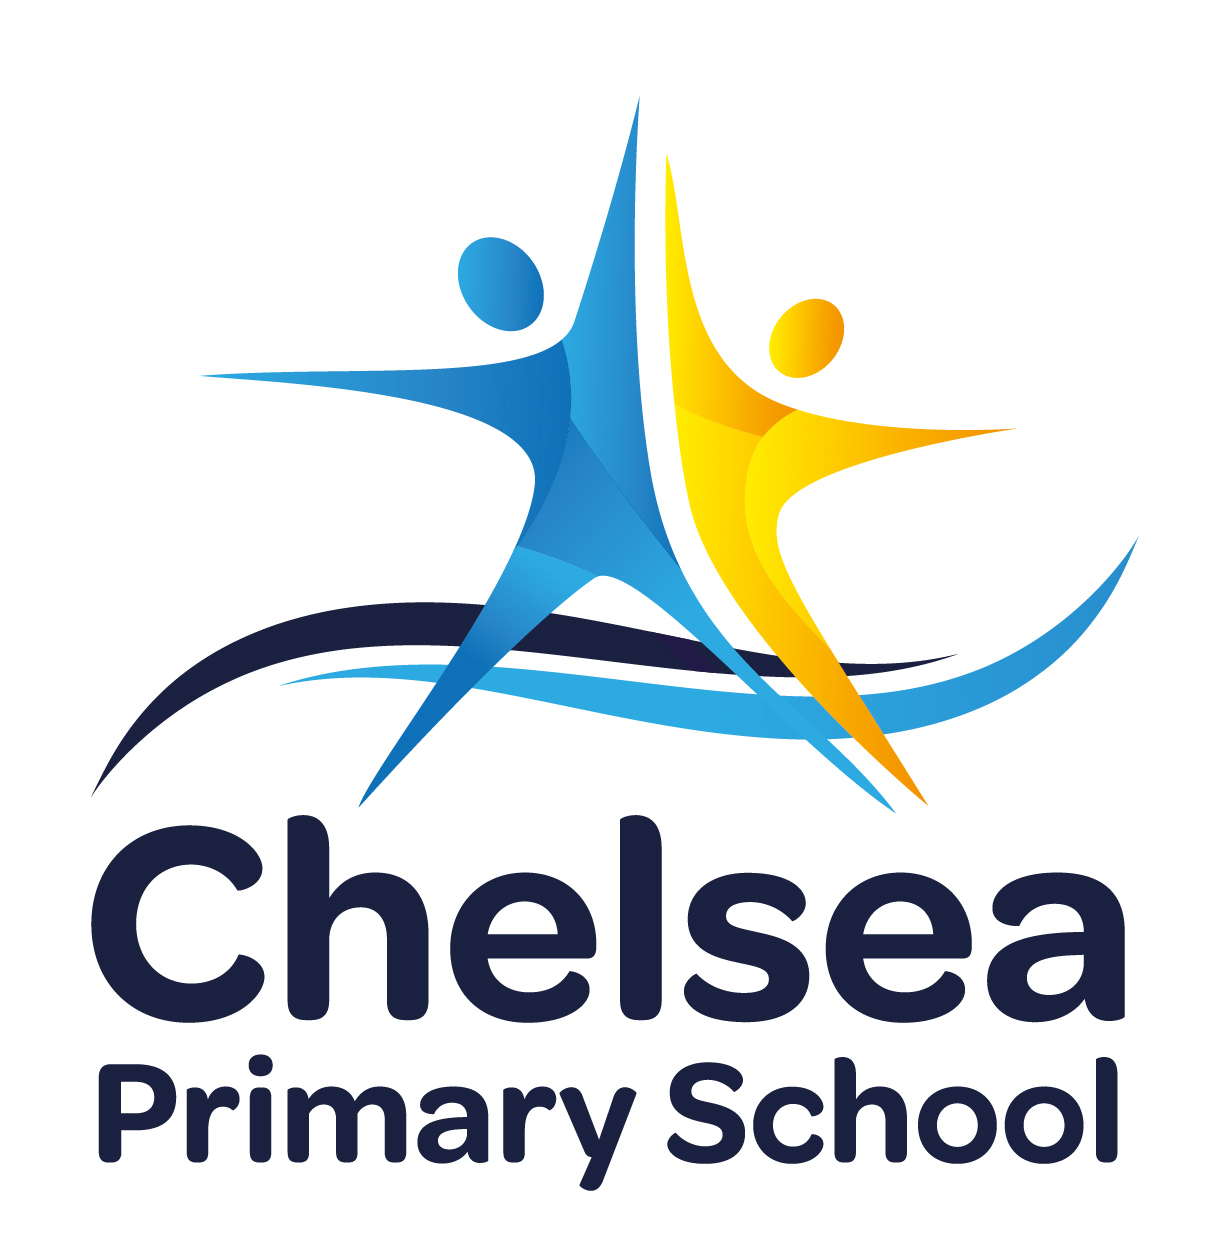 Chelsea Primary School